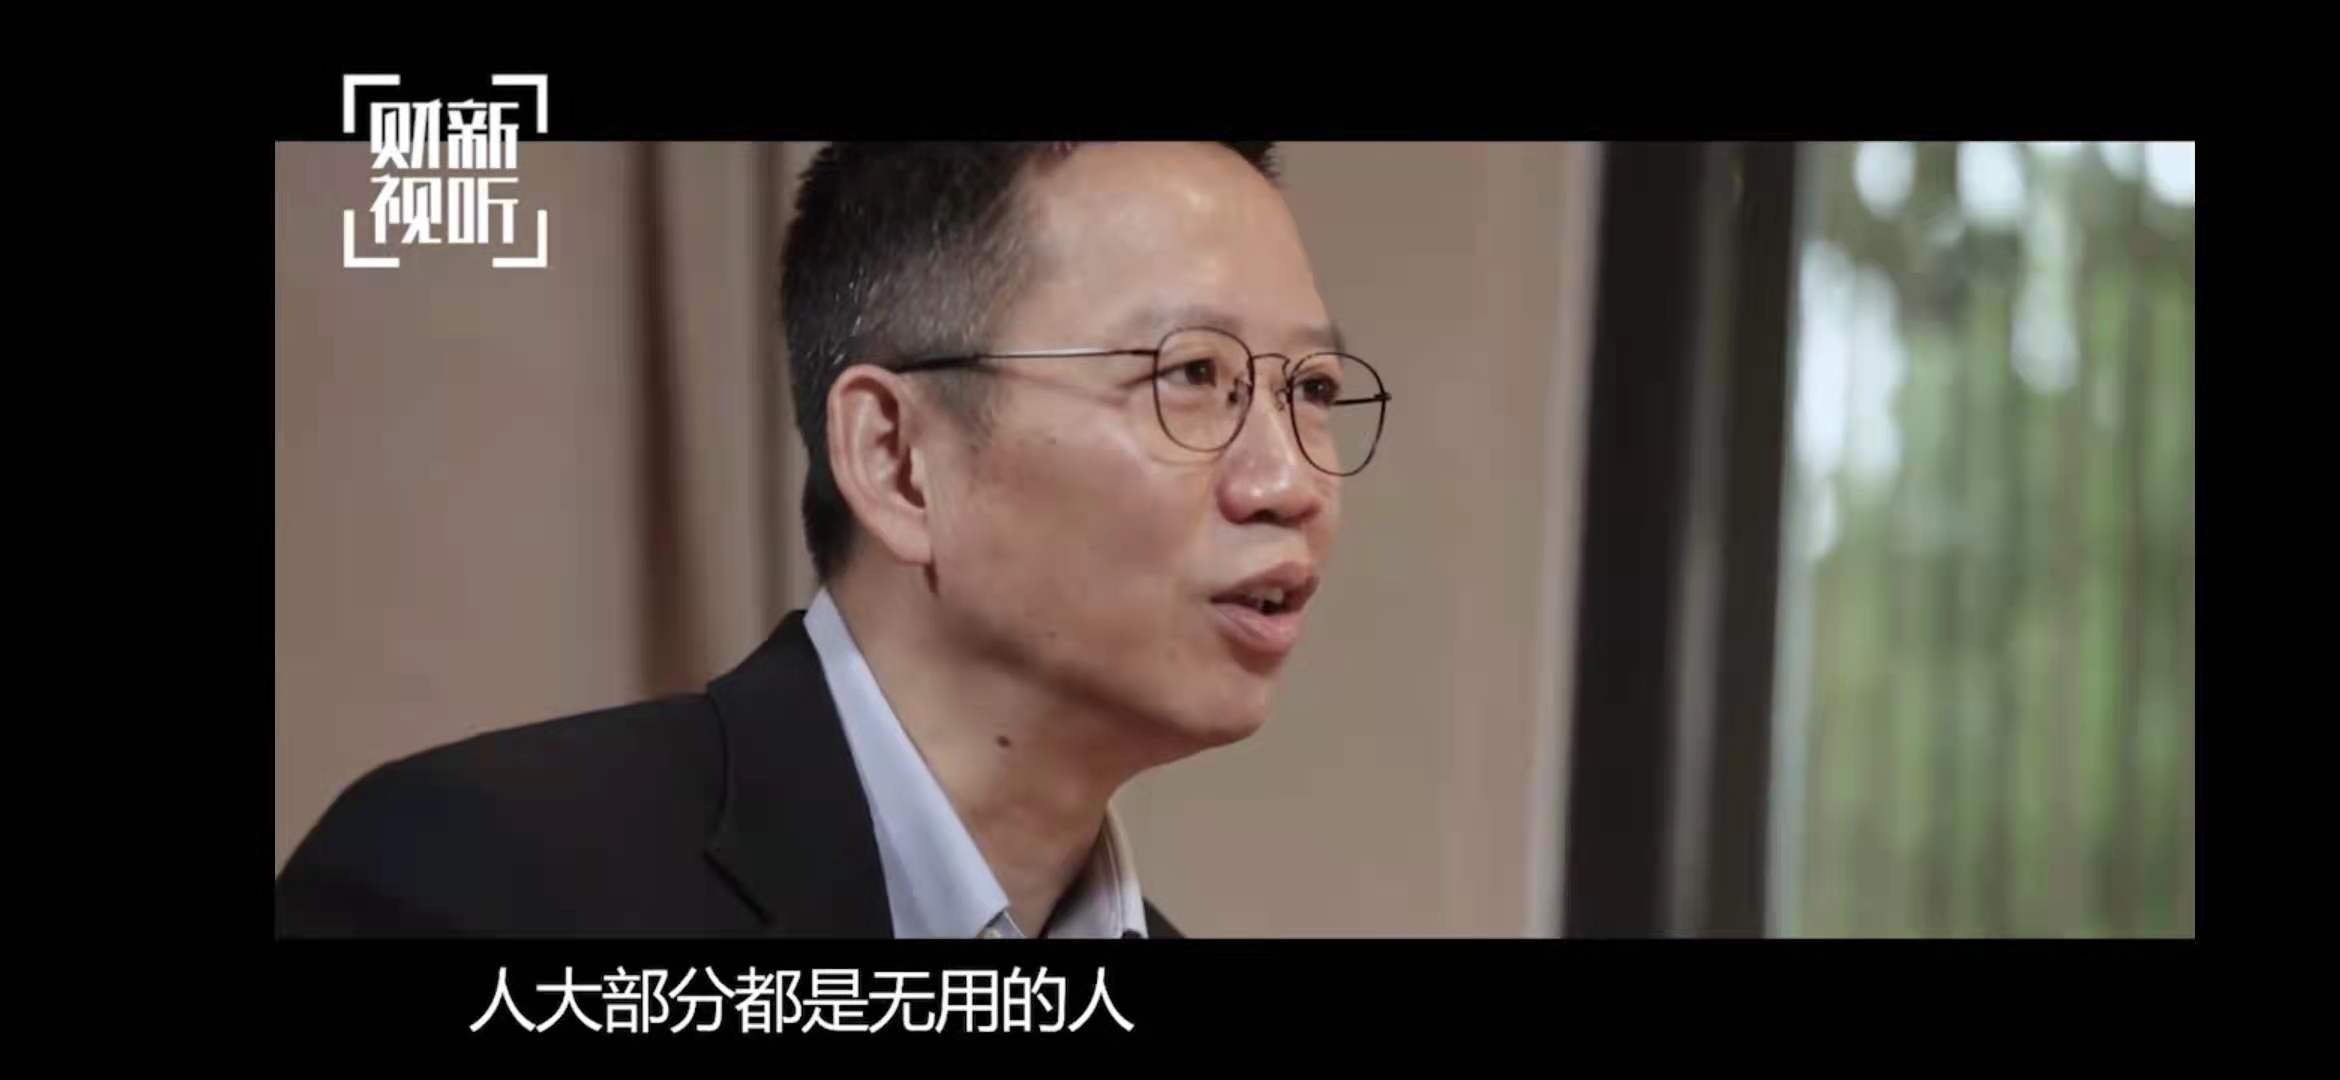 吴晓波自称是精英主义者:大部分人都是无用的 世界不需要很多人同时